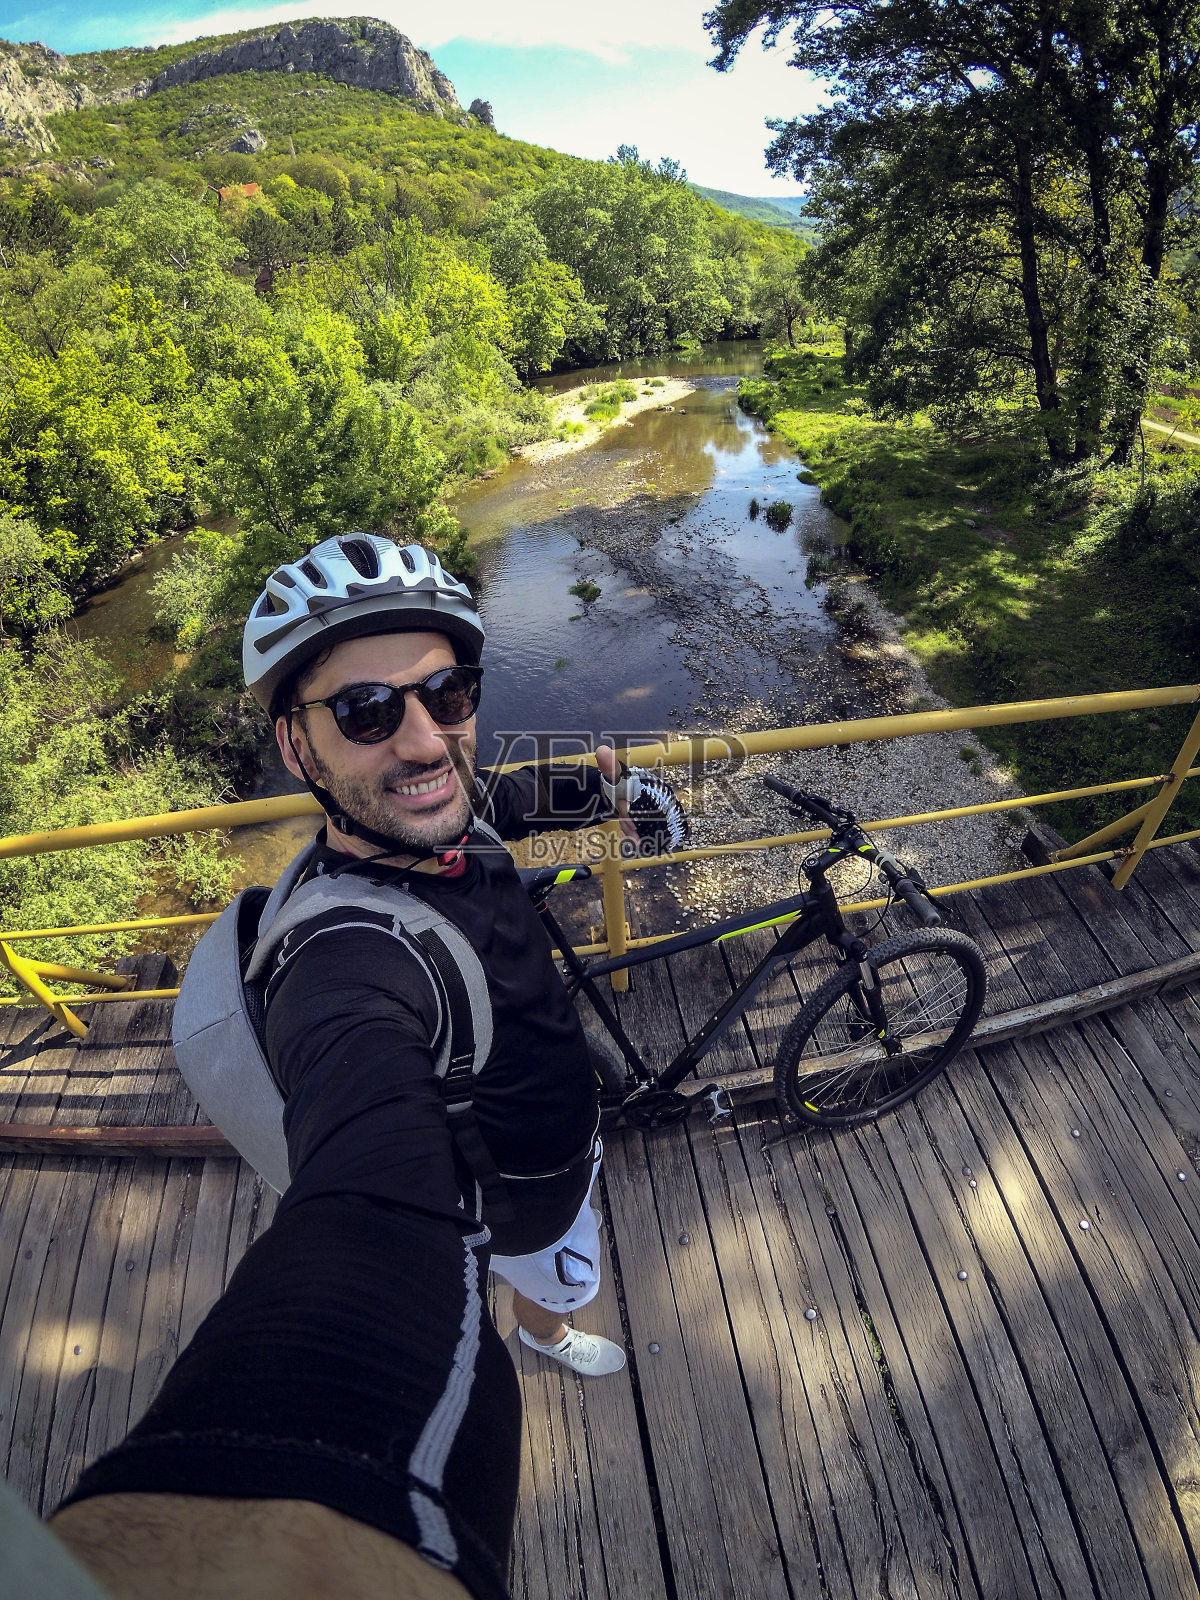 塞尔维亚一名男性山地自行车手正在穿越一座吊桥照片摄影图片